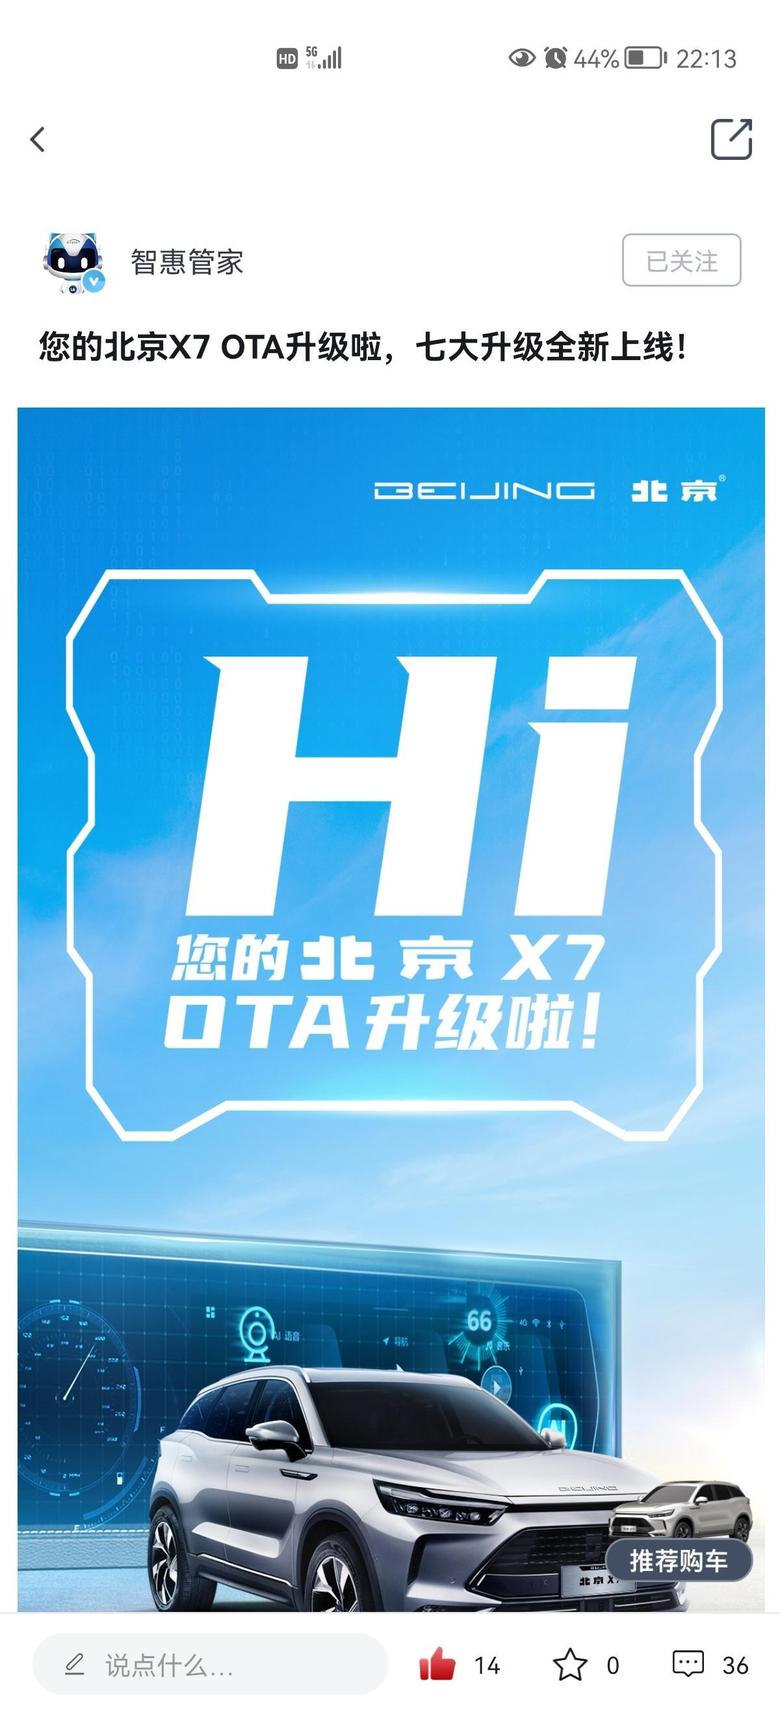 北京x7 11.11.11.11正式开放分批升级啦。